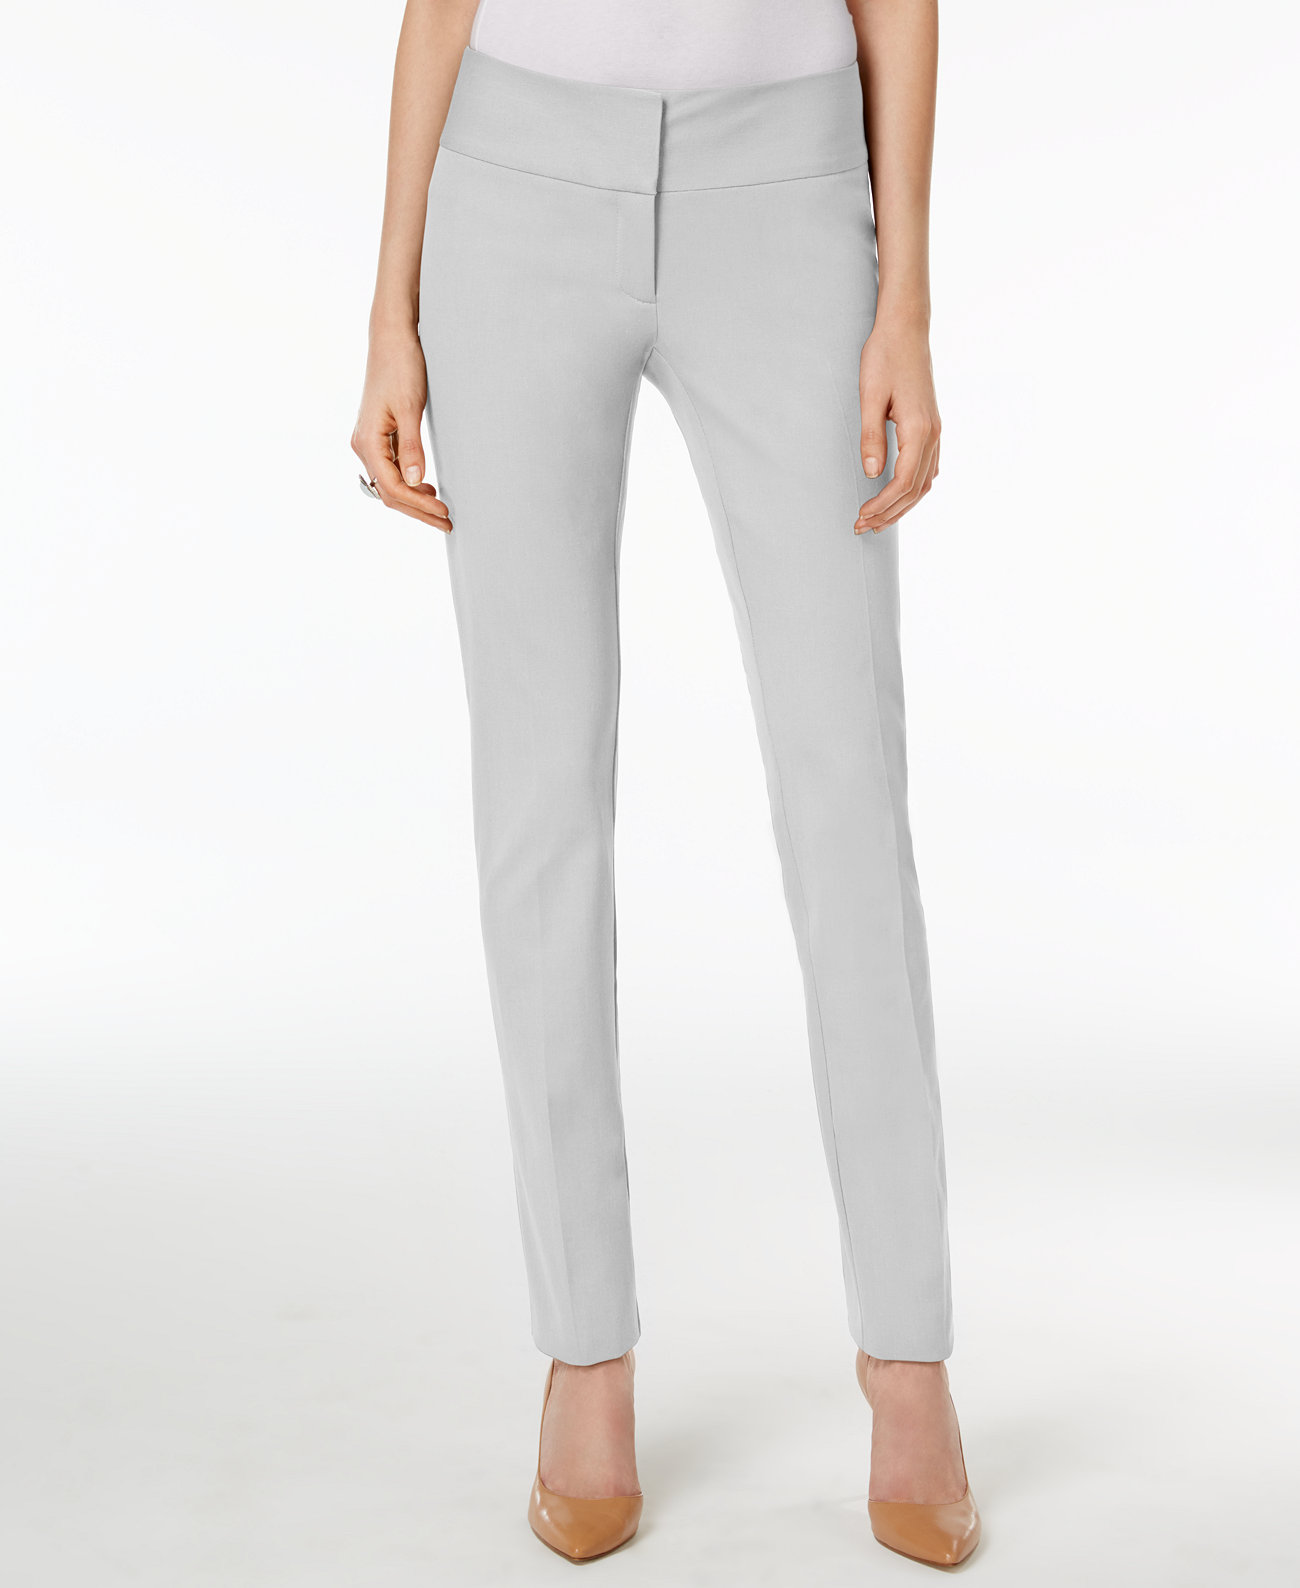 Slim Pants in Petite and Petite Short, Created for Macy's Alfani